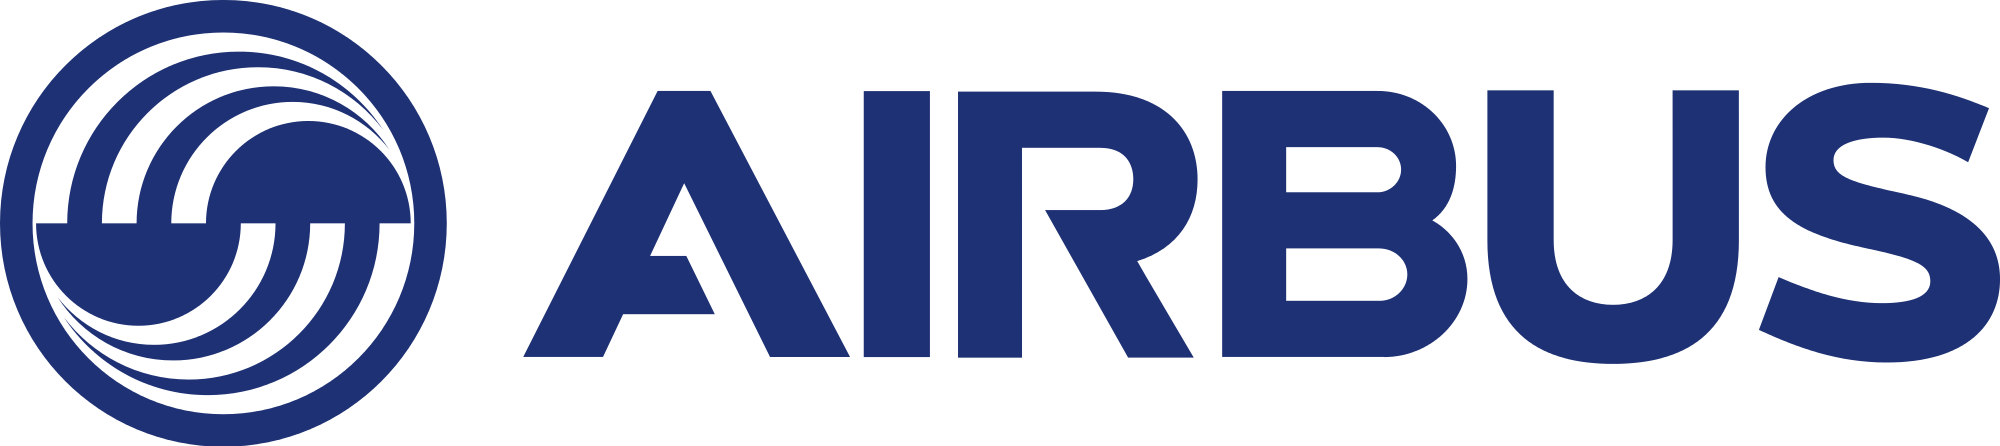 Resultado de imagen para Airbus logo png